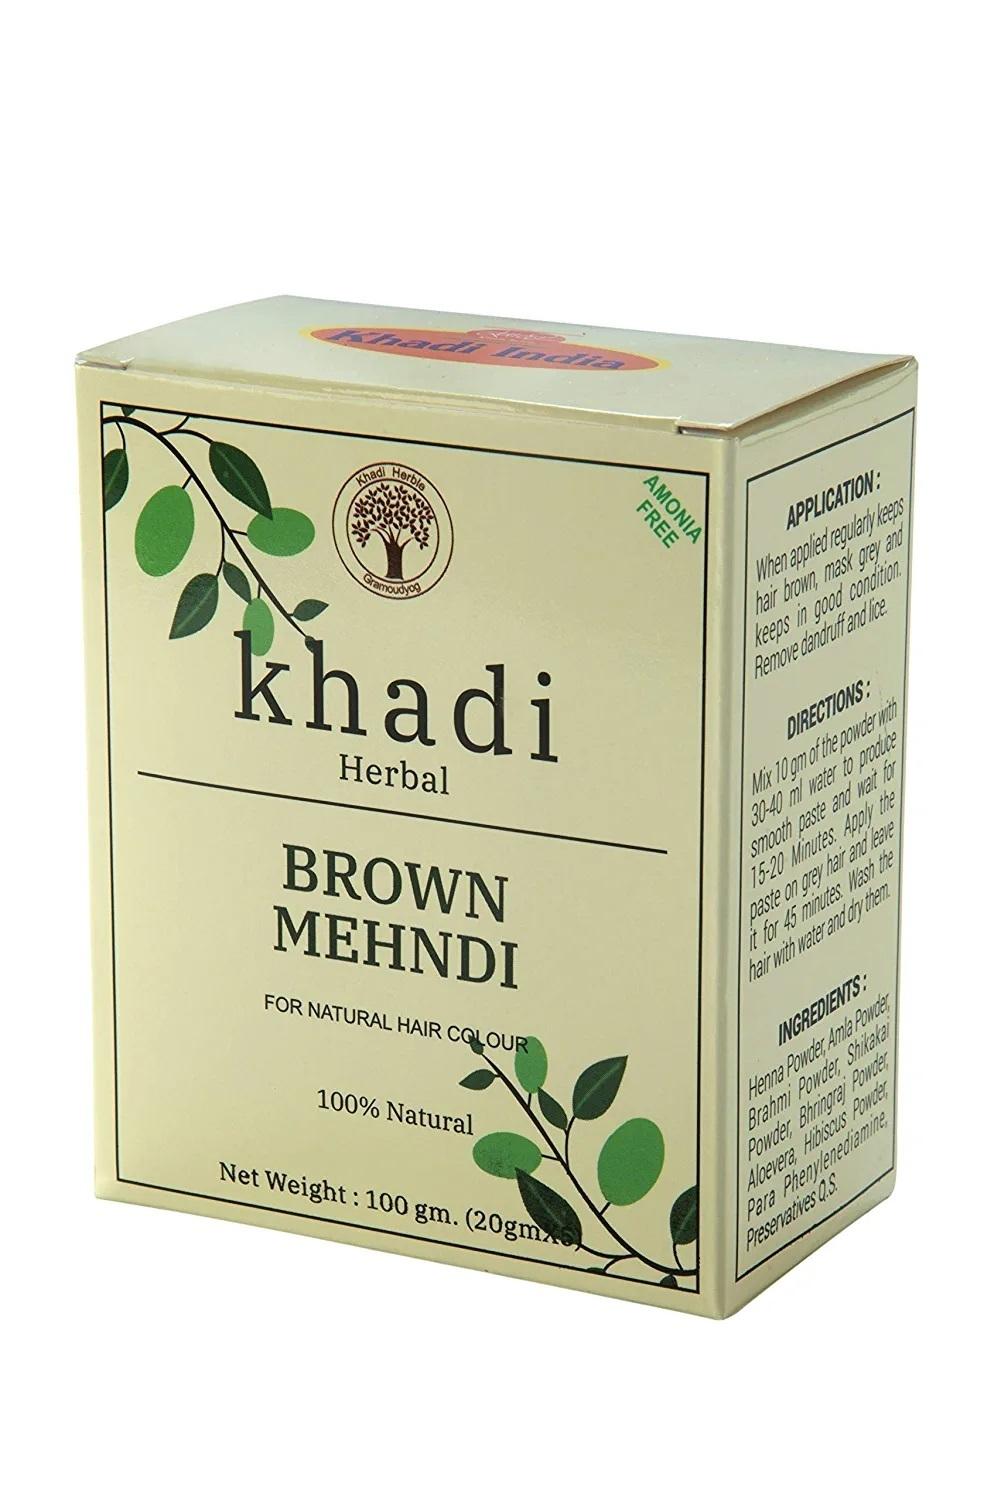 Khadi Shuddha Brown Mehendi For Natural Hair Colour, 100g - Brown (Pack of  3) - JioMart